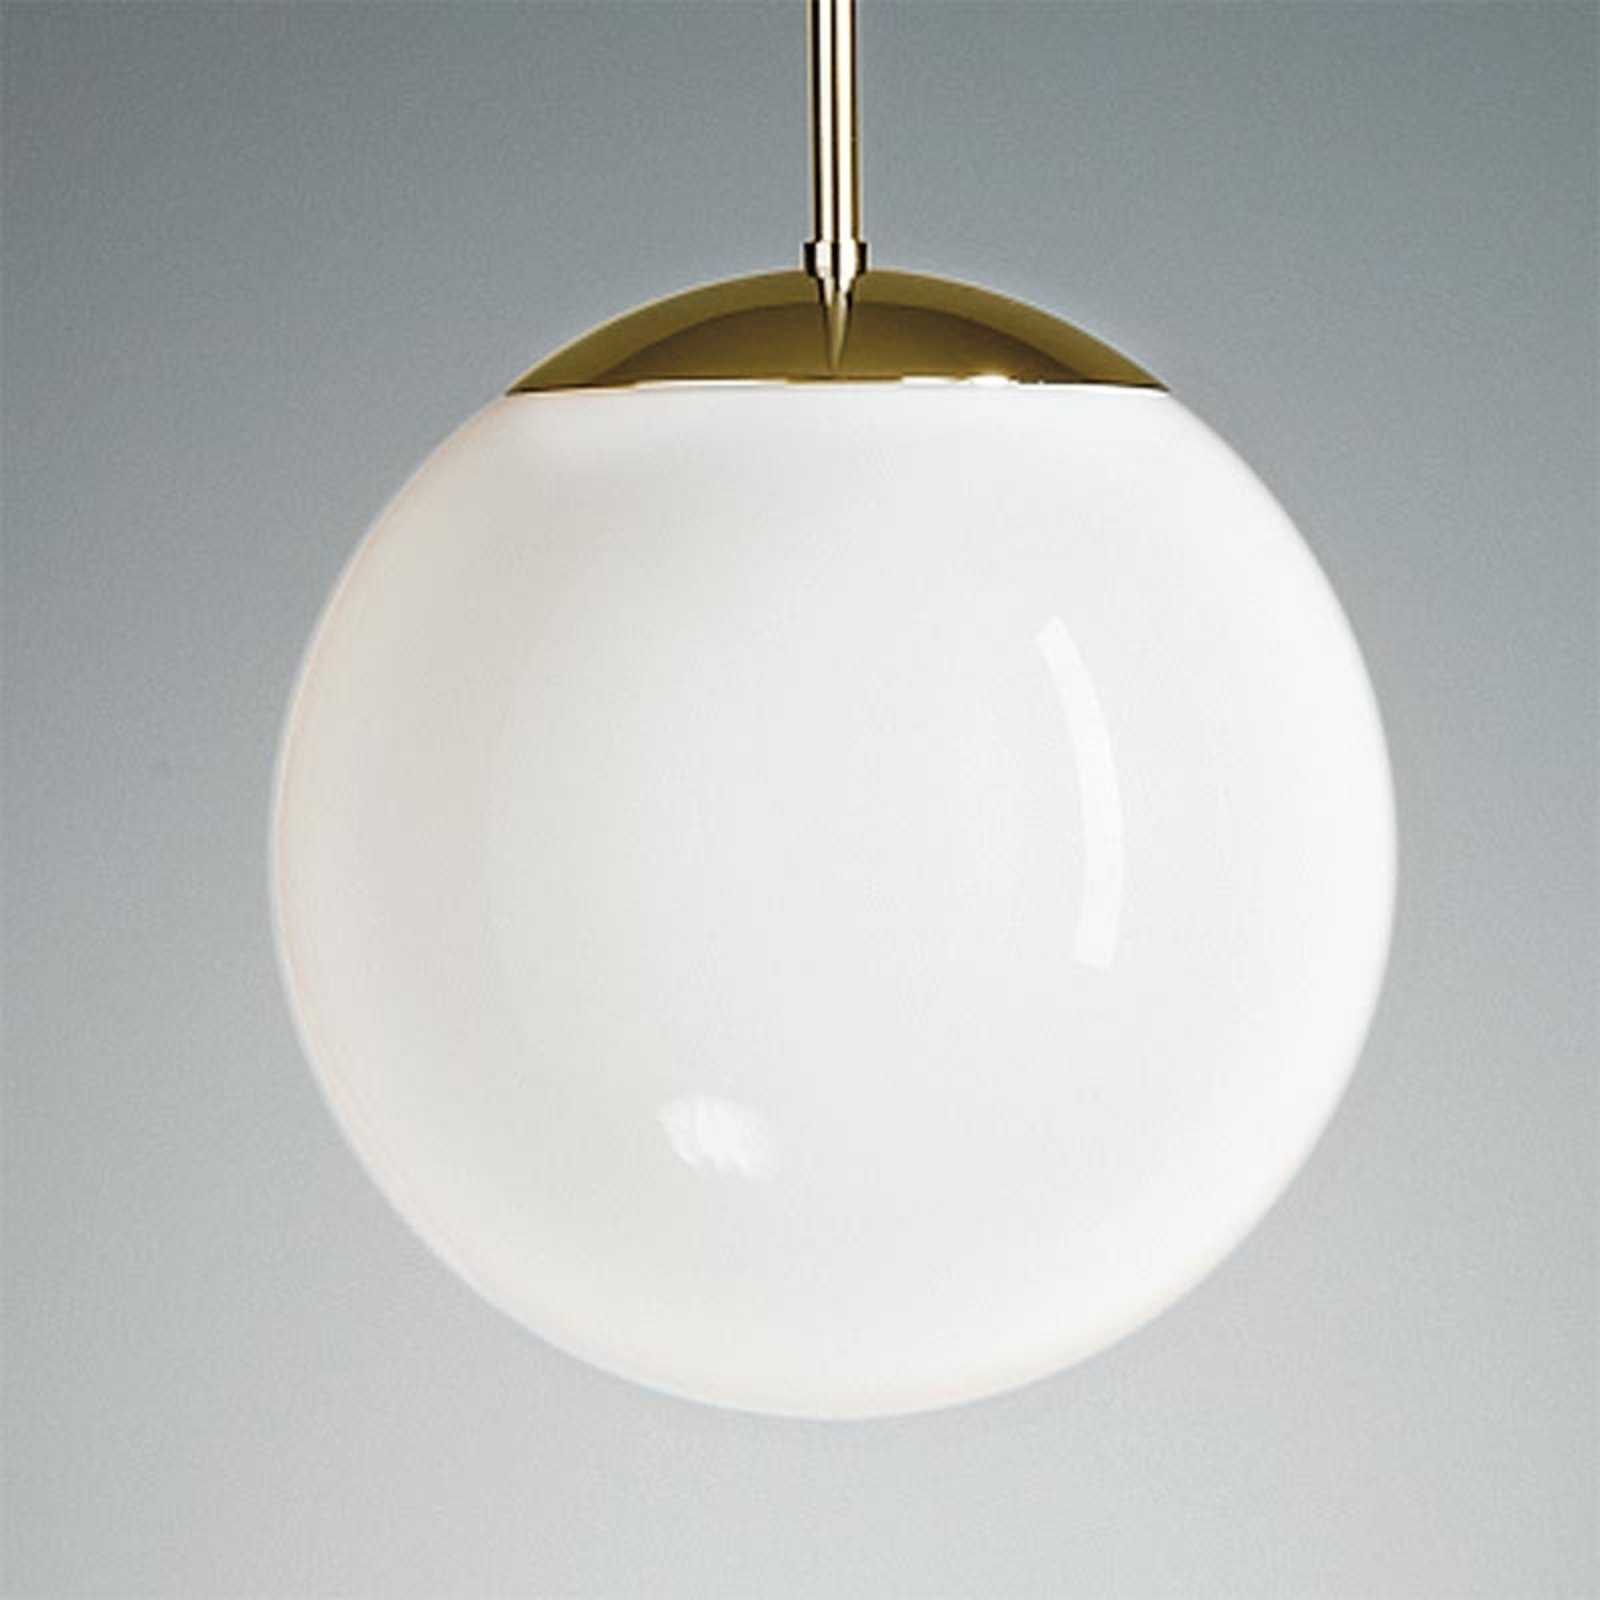 Lampada pensile, sfera opalescente, 40 cm, ottone